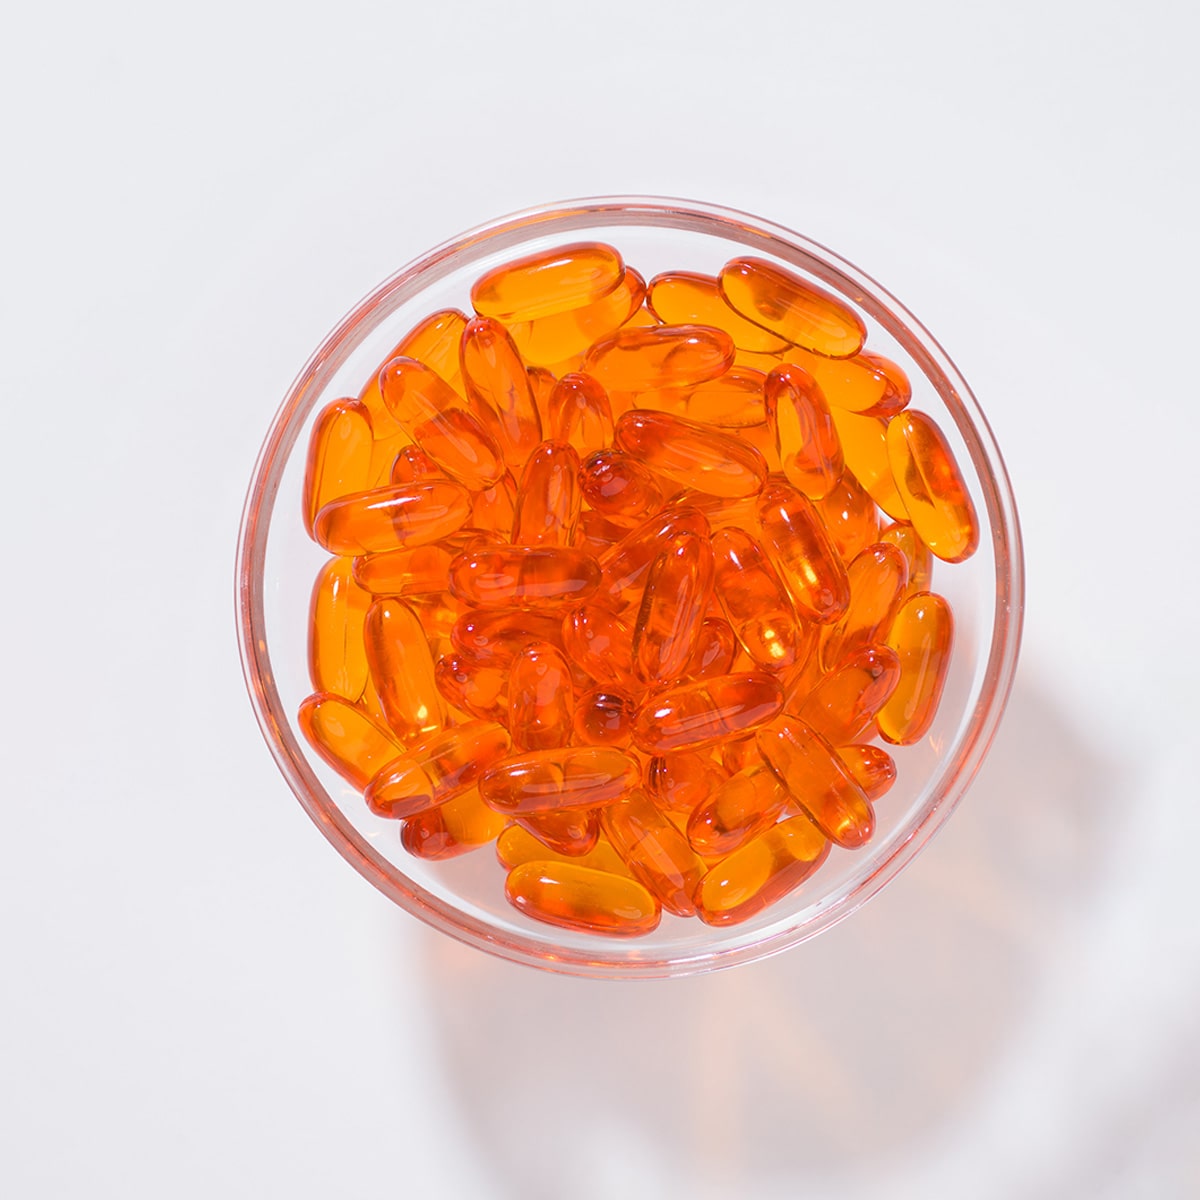 In einer kleinen Glasschüssel liegen orangene Marine Omega Gelkapseln.